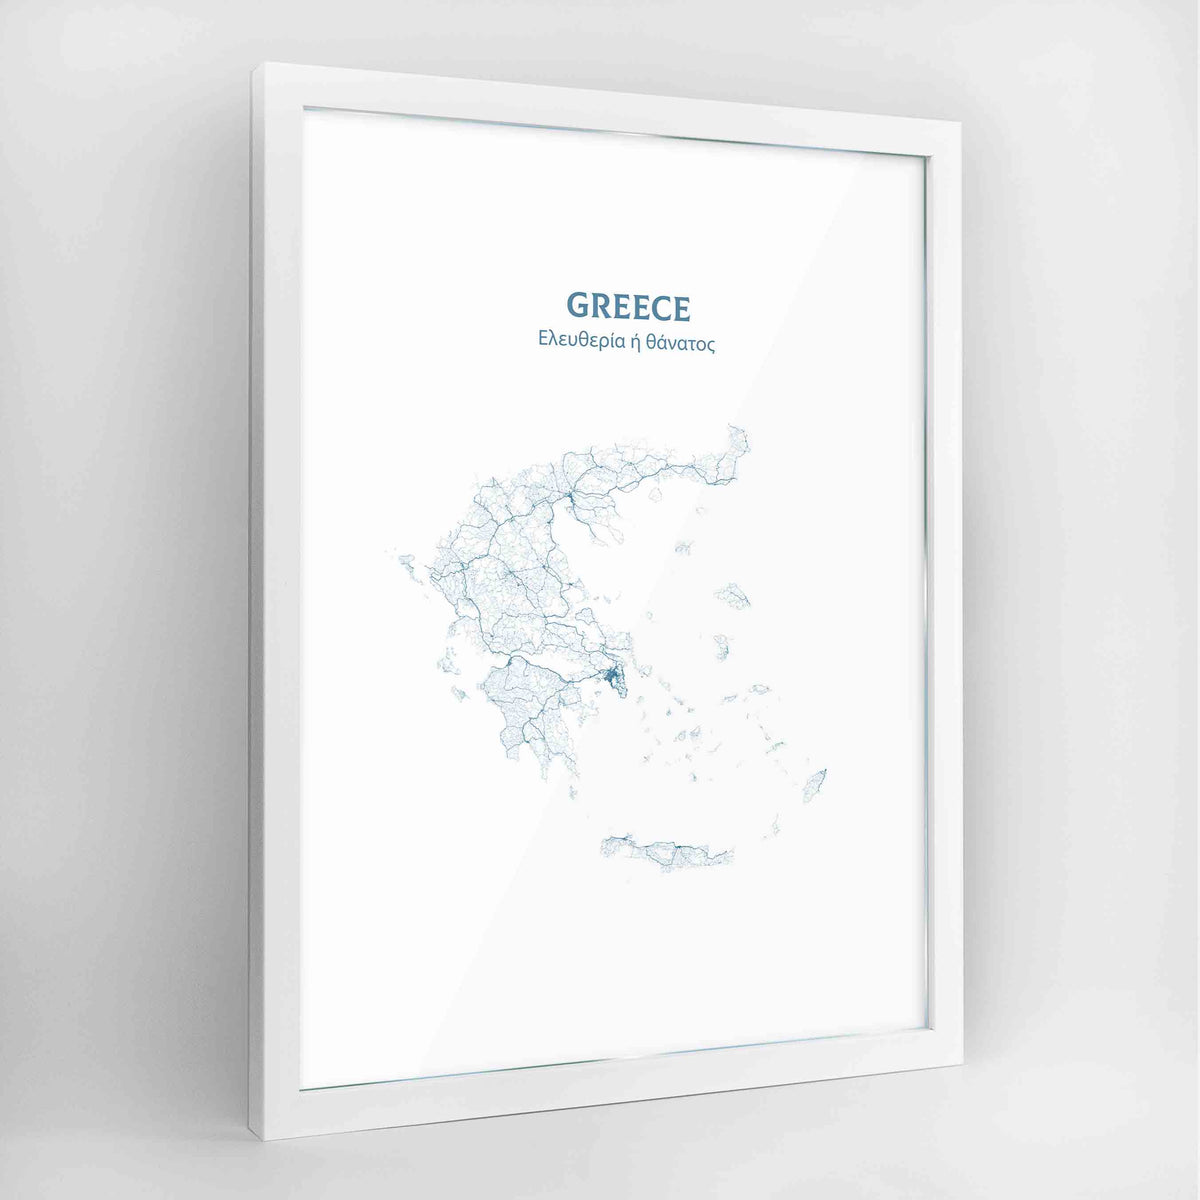 Greece - All Roads Art Print - Framed